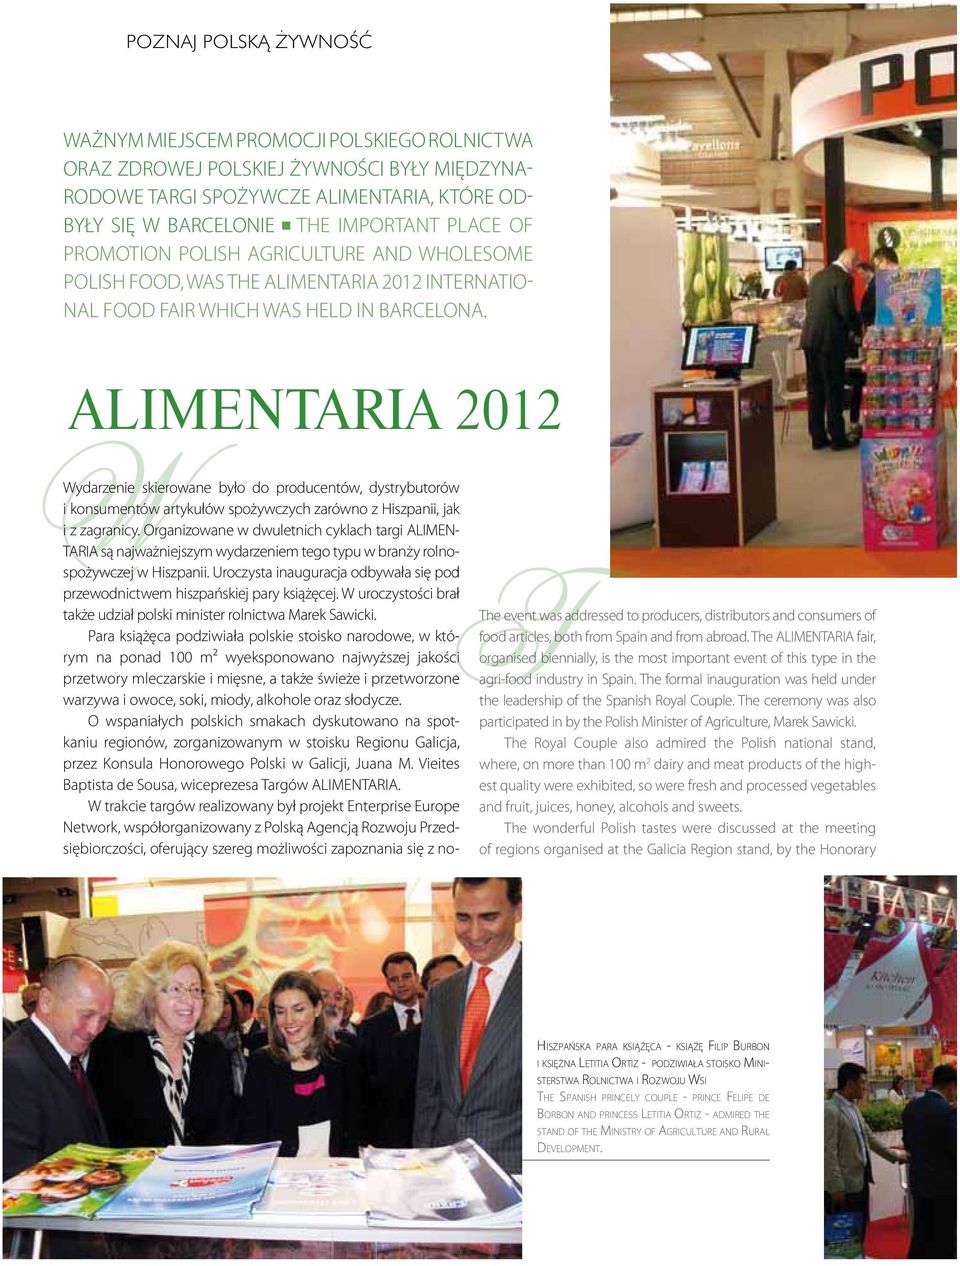 ALIMENTARIA 2012 WWydarzenie skierowane było do producentów, dystrybutorów i konsumentów artykułów spożywczych zarówno z Hiszpanii, jak i z zagranicy.